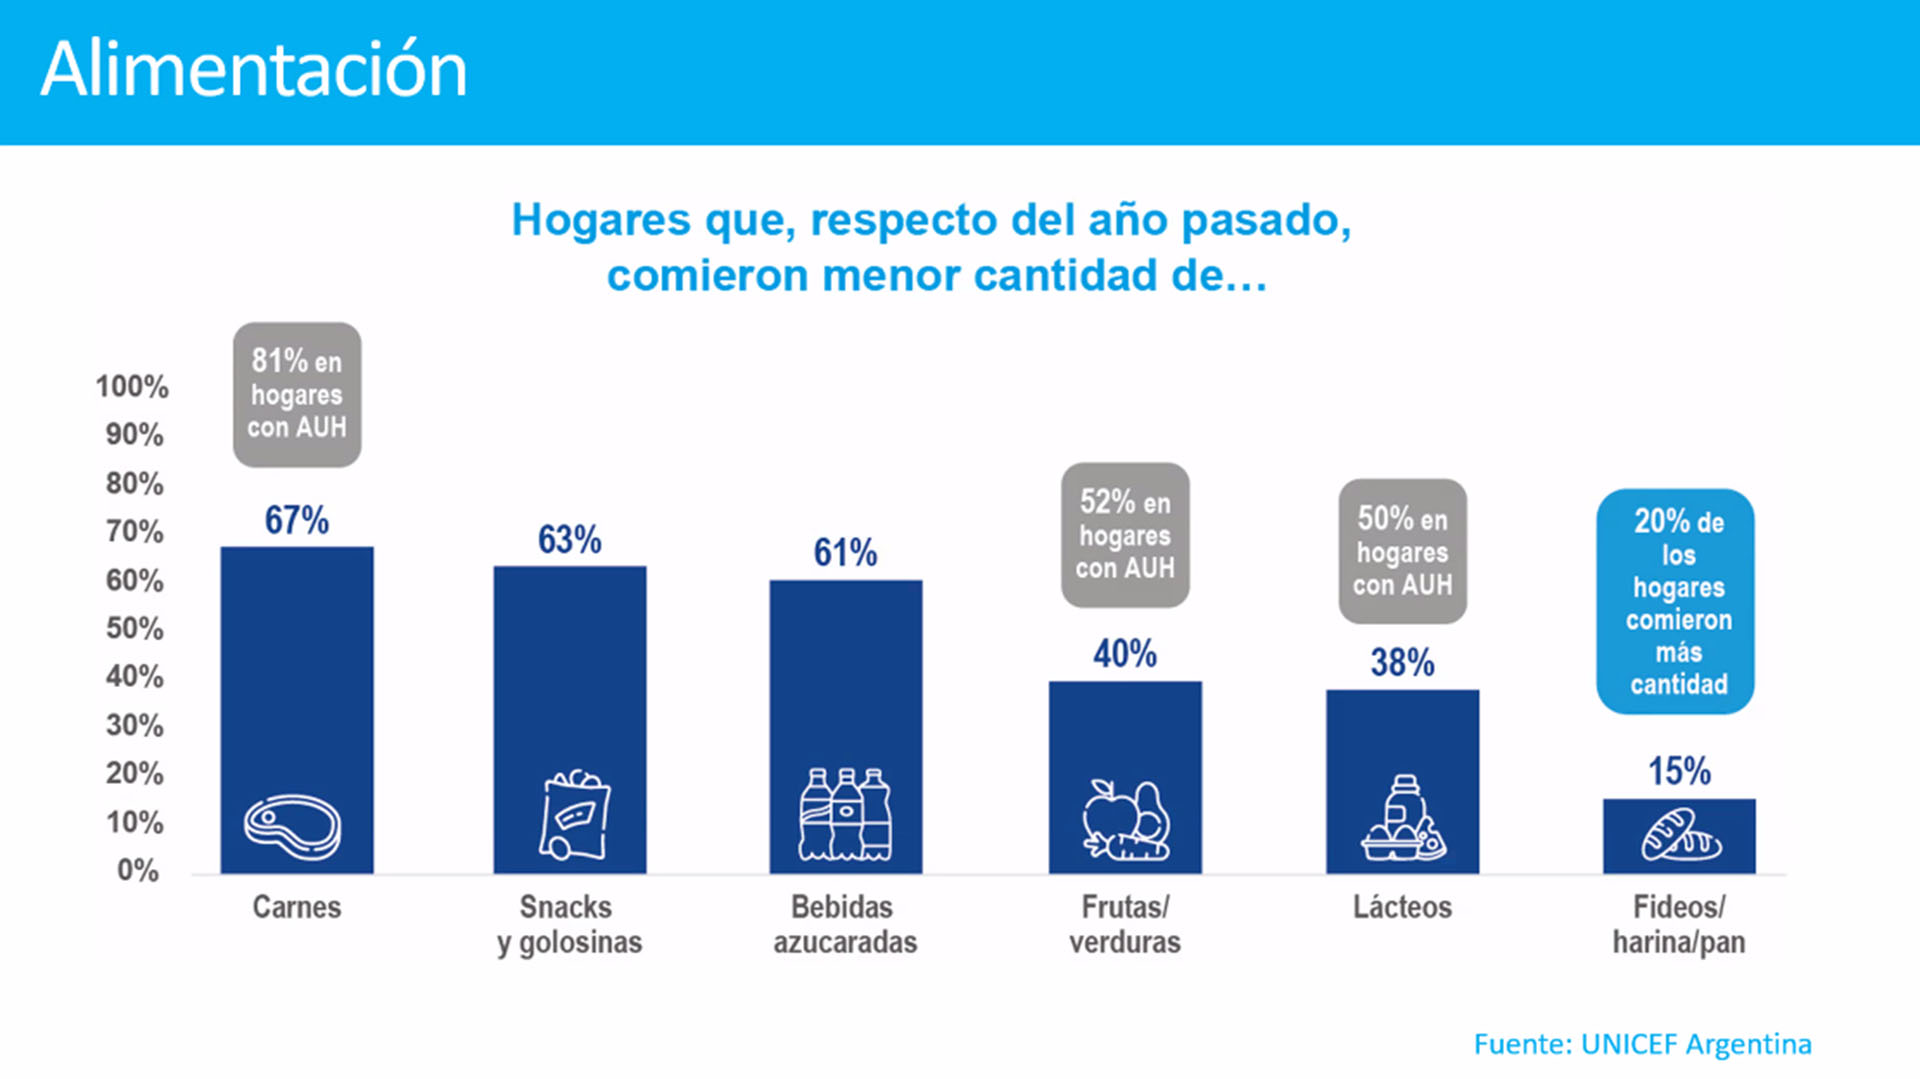 Debido a la falta de dinero o escasos ingresos, en muchos hogares argentinos suprimieron una comida o disminuyeron el consumo de algún tipo de alimento, según la Encuesta de Unicef 